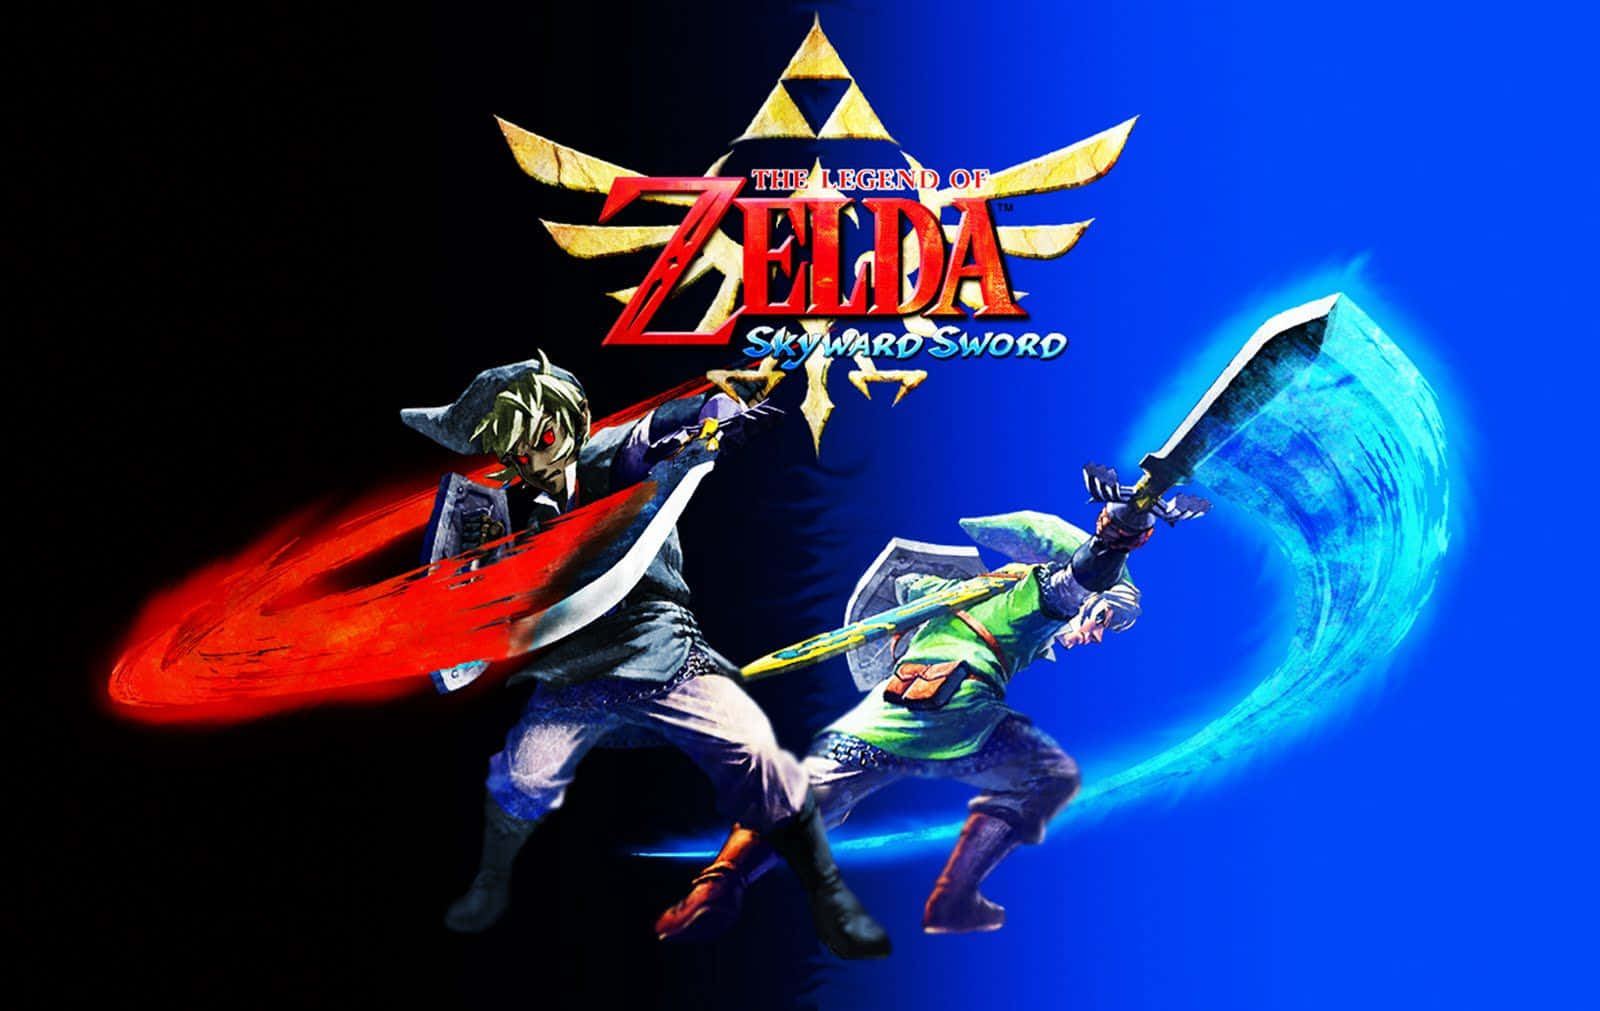 Link and Zelda exploring the Skyloft in The Legend of Zelda: Skyward Sword Wallpaper